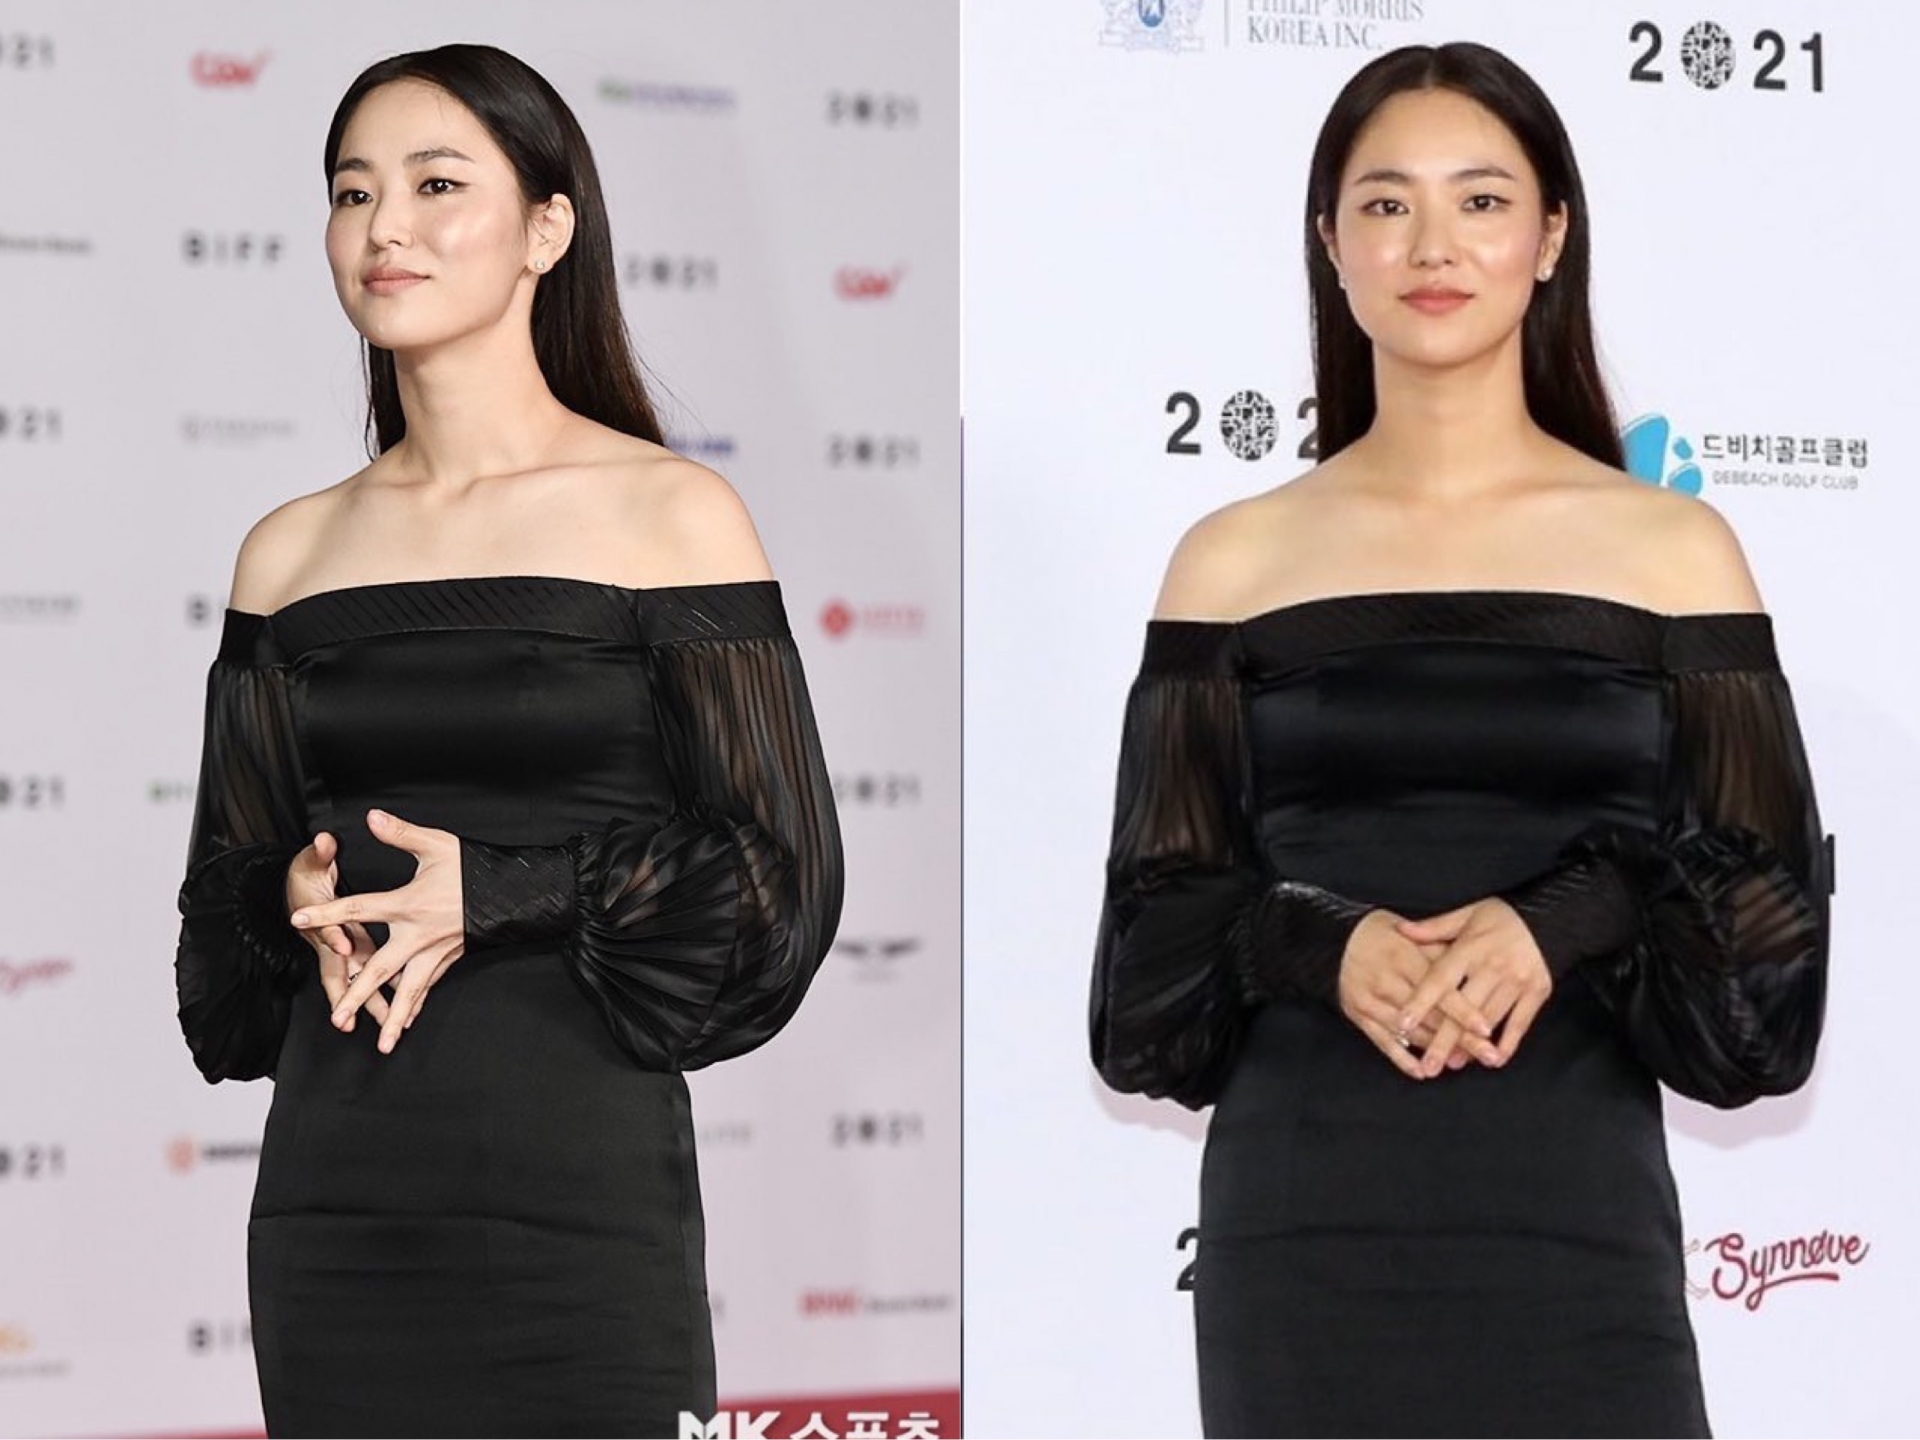 Nhiều người cho rằng do mái tóc ngắn mà Jeon Yeo Bin trông kém sắc hơn. Tuy nhiên khi xuất hiện cùng mái tóc dài tại LHP Busan, cô nàng lại 'mất điểm' bởi cách chọn trang phục khiến thân hình trông to hơn, đi kèm đó là layout makeup rất nhợt nhạt.